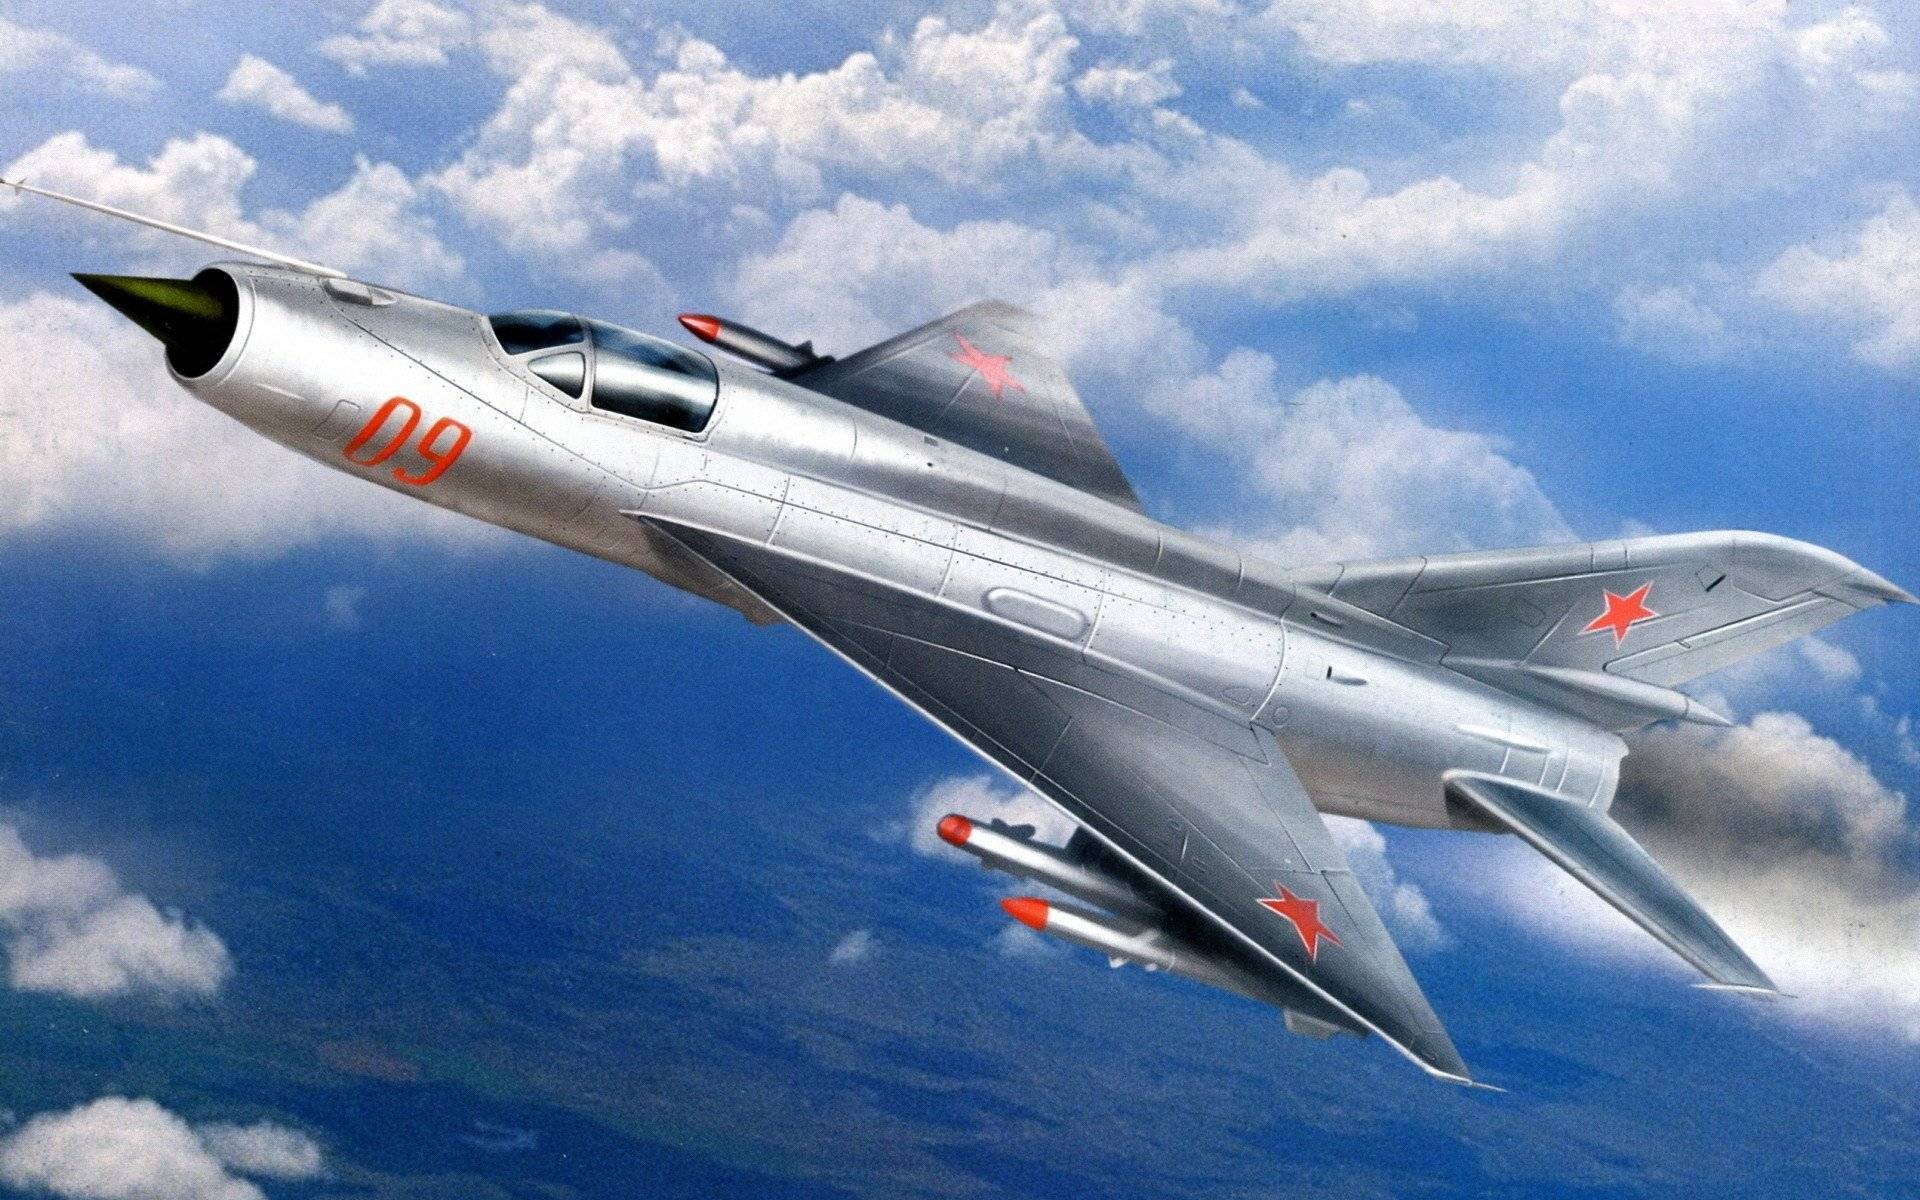 Самолет миг-21 истребитель — фото, характеристики